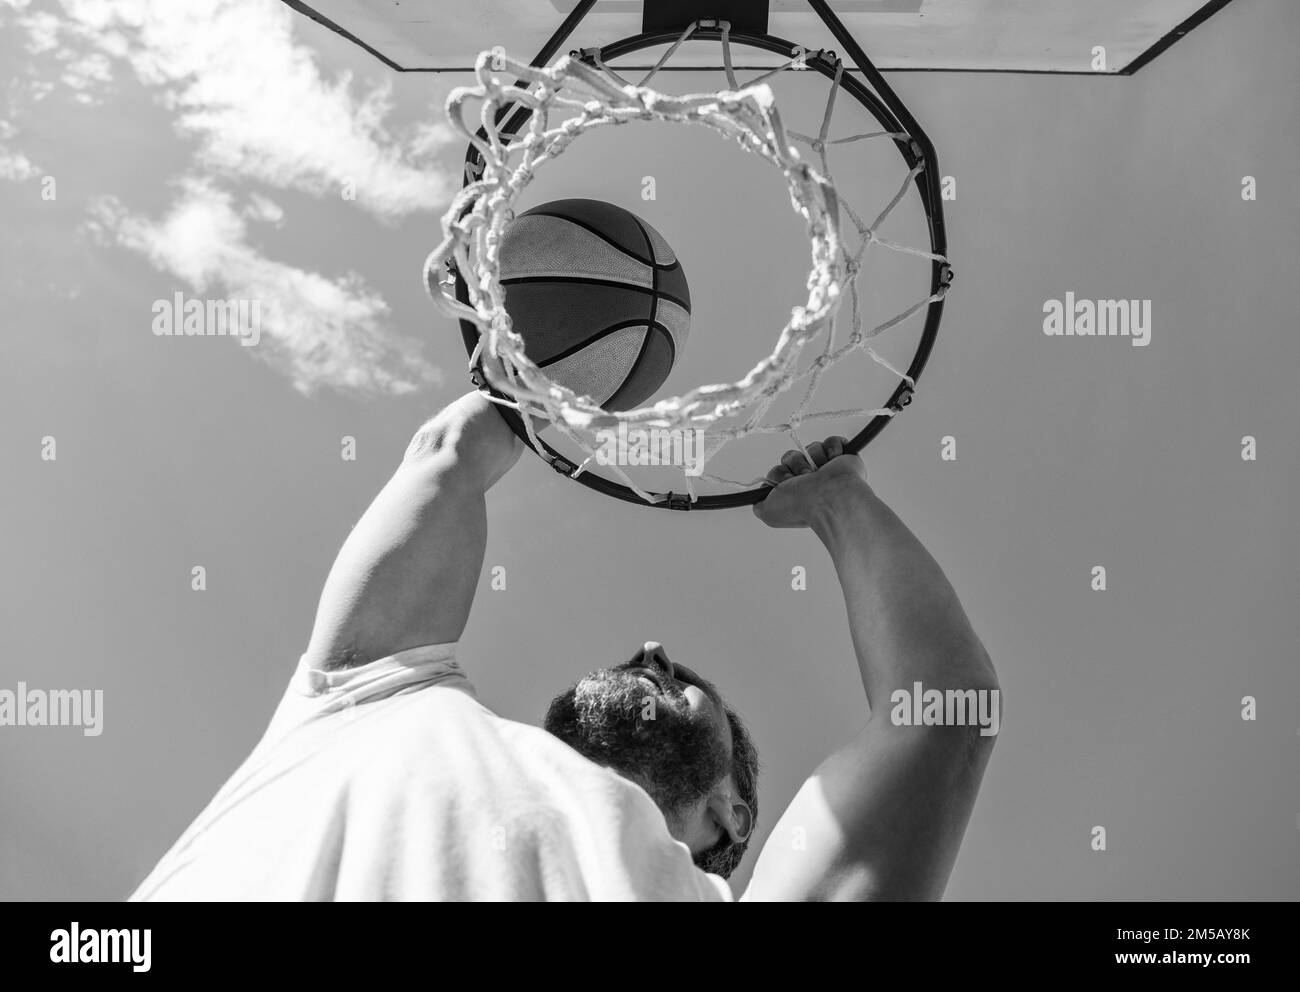 activité estivale. homme avec ballon de basket-ball sur le terrain. joueur professionnel de basket-ball Banque D'Images